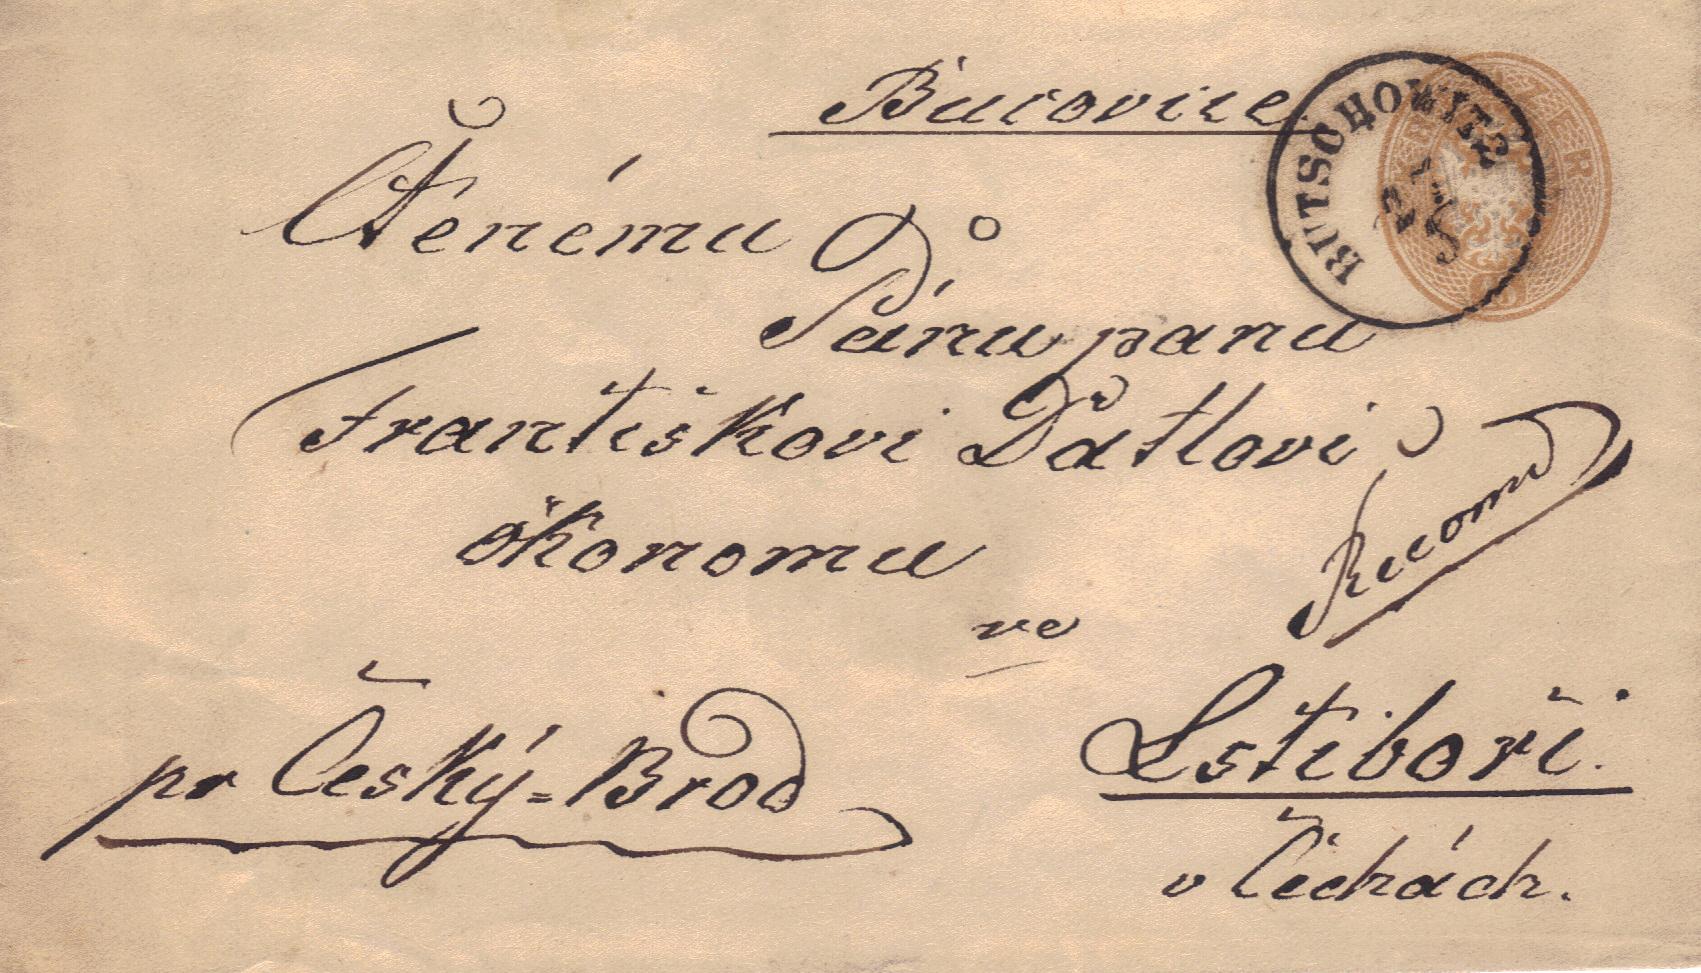 Butschowitz; Auf diesem 15 kr. Reko-Umschlag wurde der Rekostempel vom Postmeister wohl vergessen